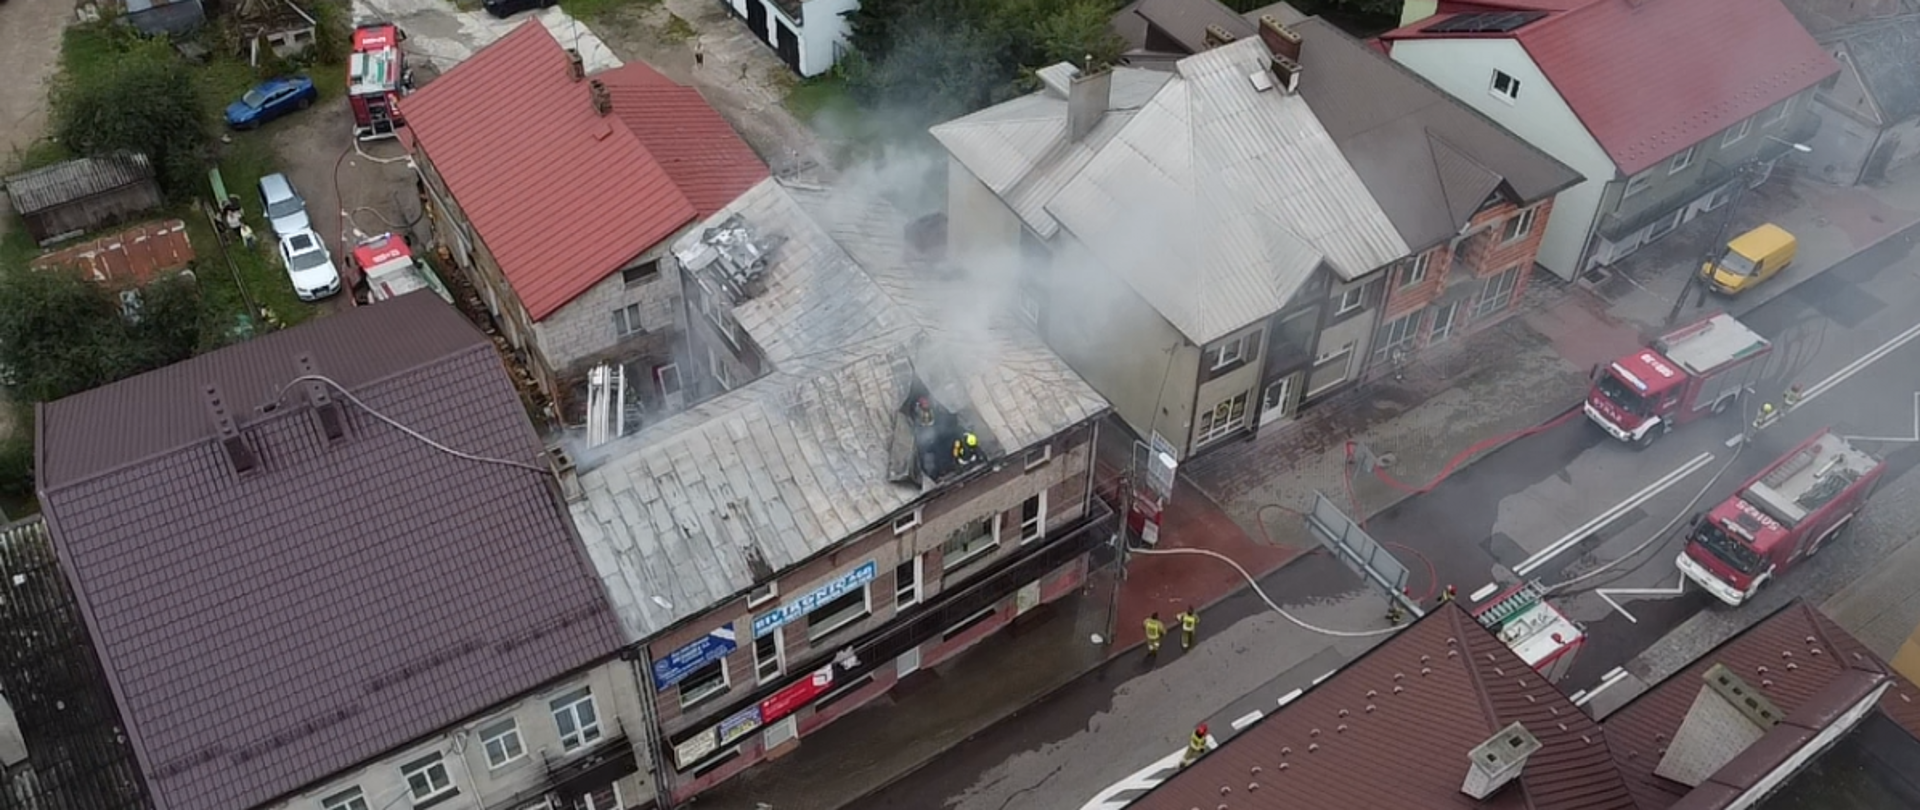 Pożar poddasza budynku jednorodzinnego w Zambrowie